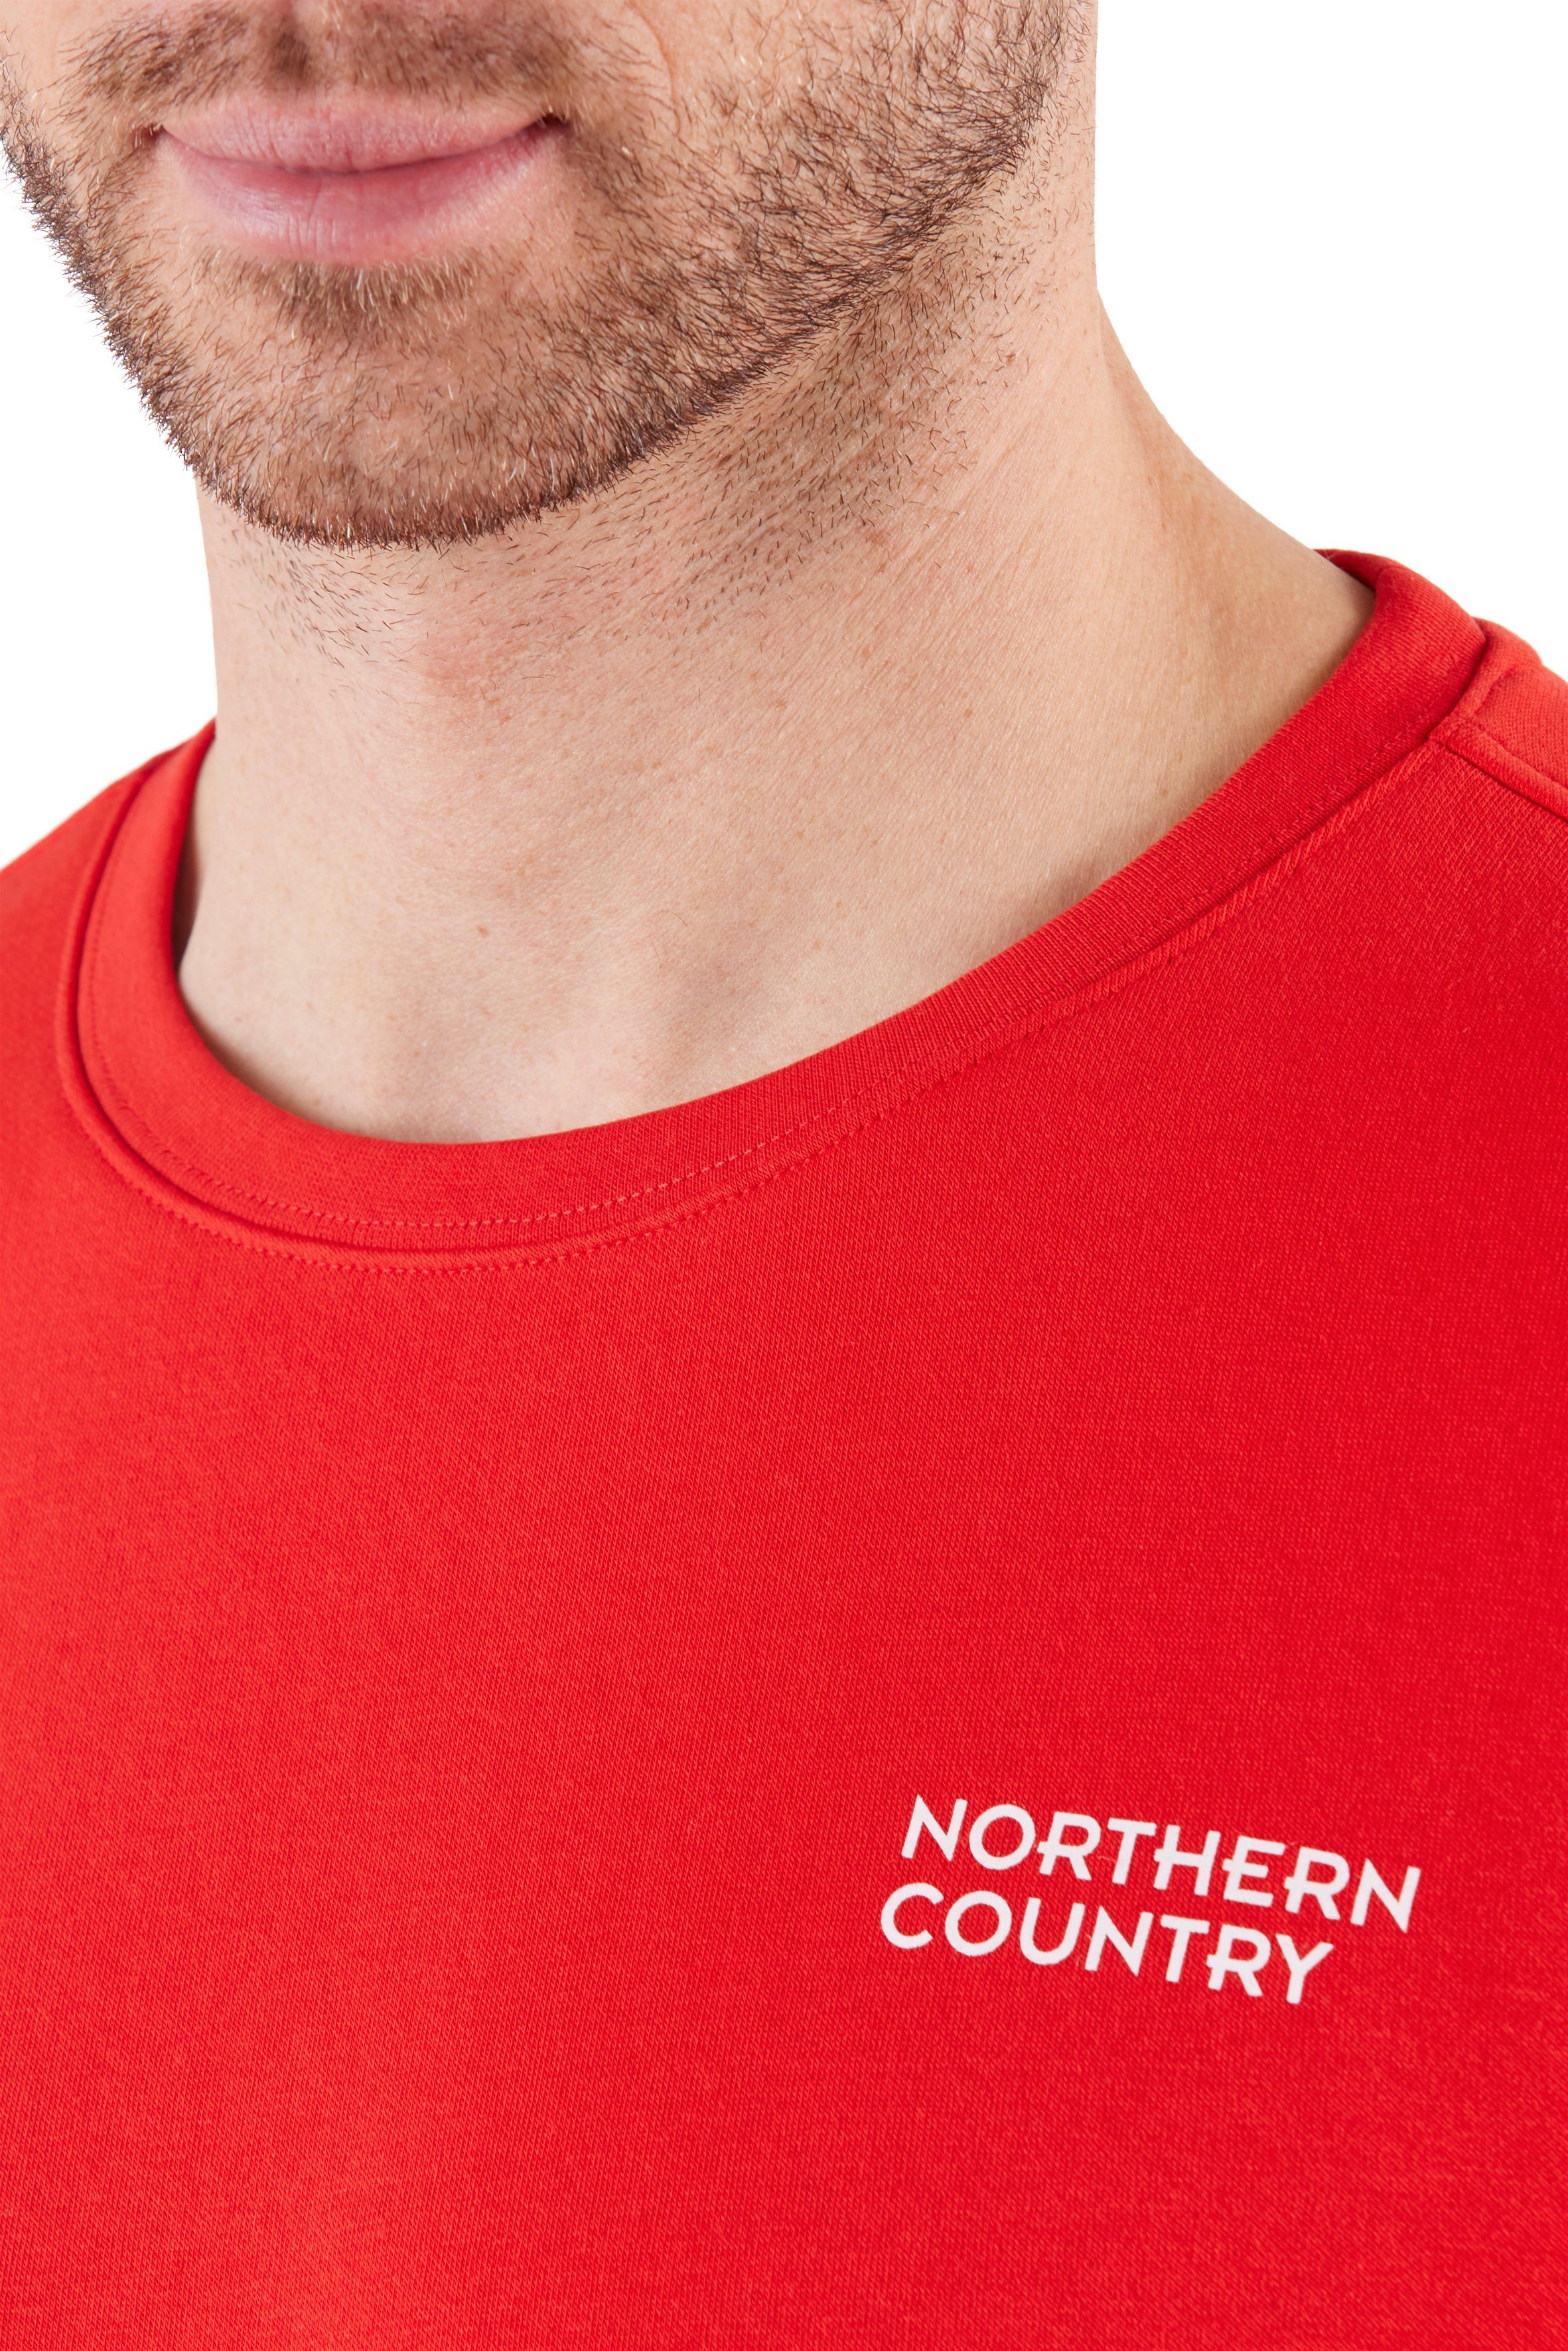 Sweatshirt Passform, zum Northern Country klassische Arbeiten, Sweatware leichte